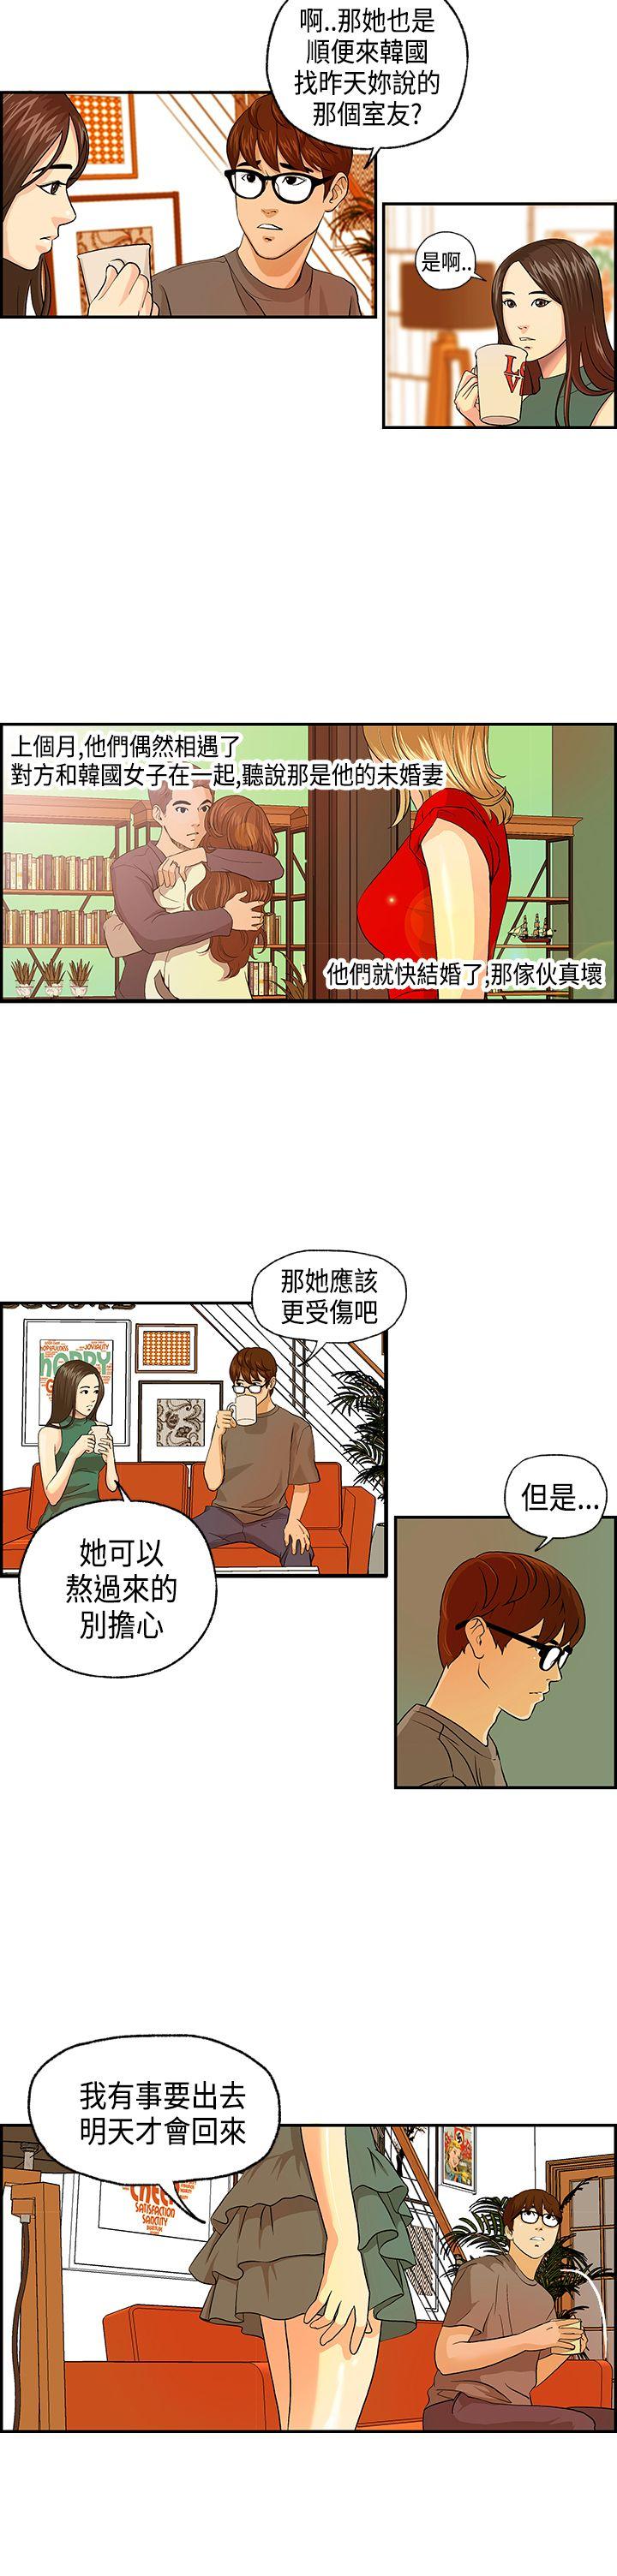 韩国污漫画 激情分享屋(完結) 第4话 5